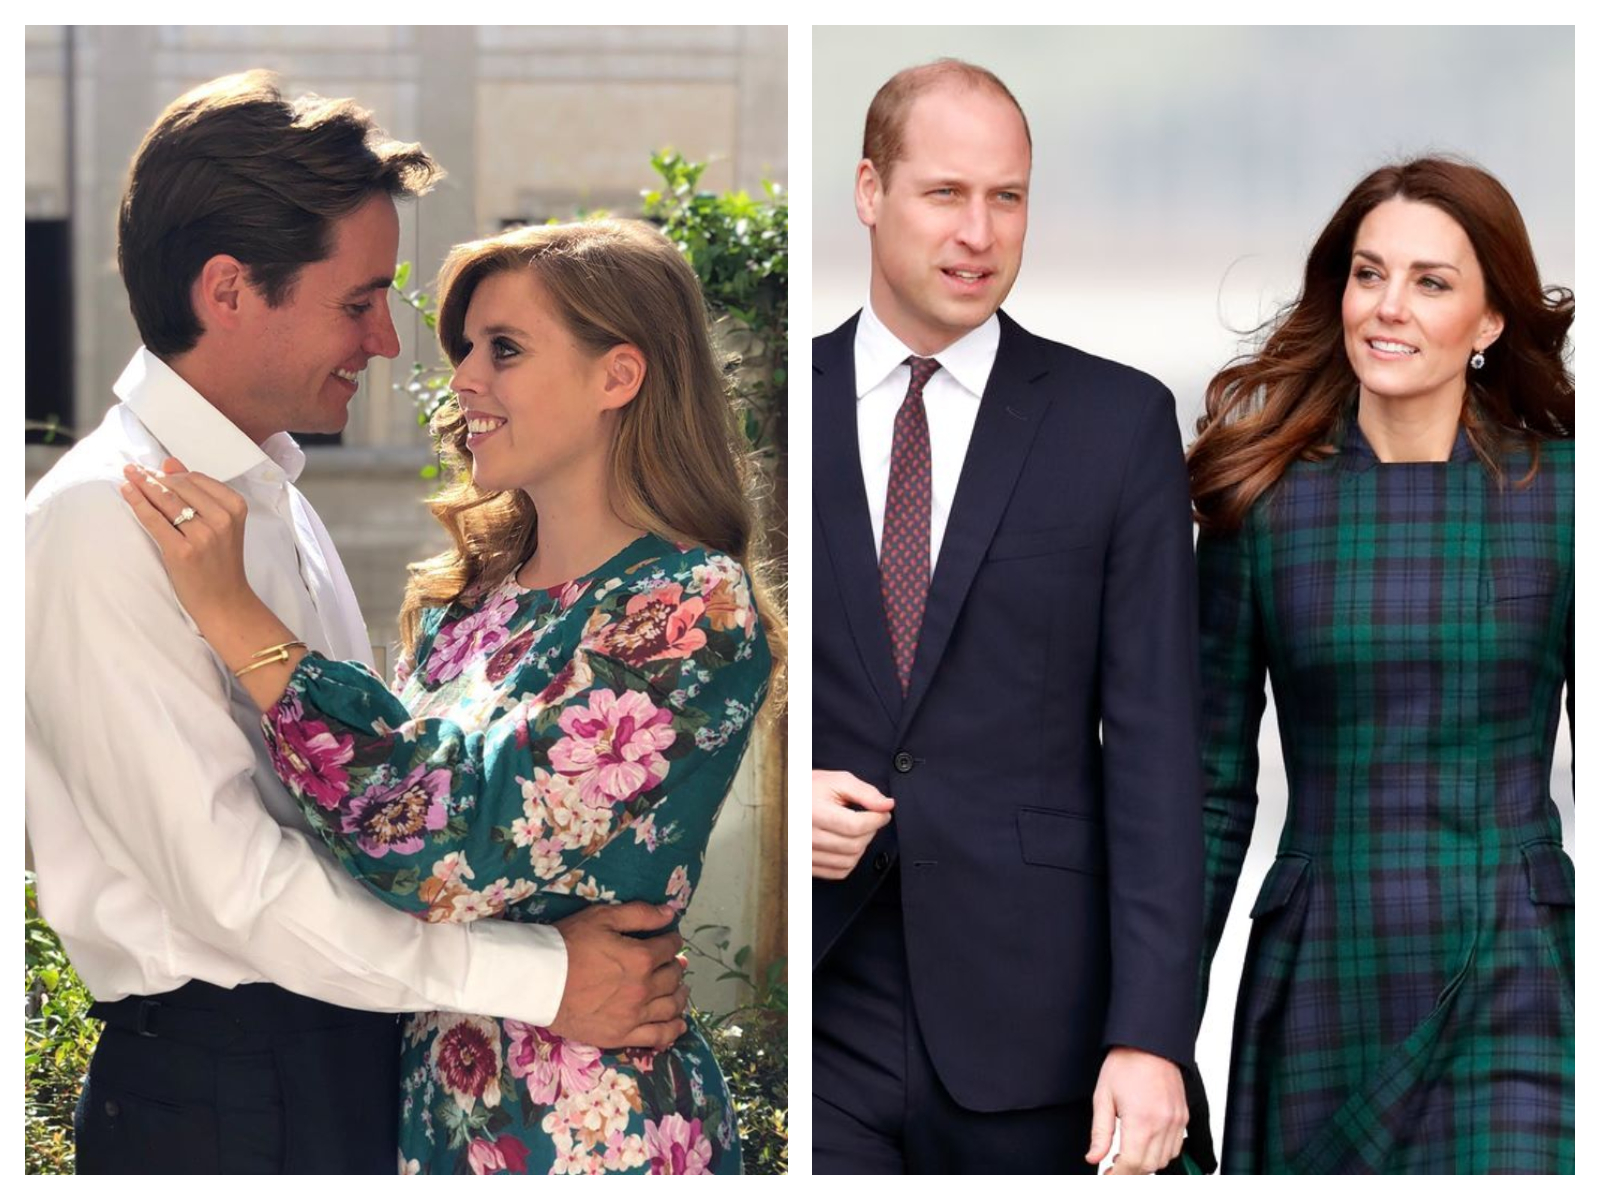 Mariage de Beatrice d’York : Kate Middleton et le prince William pourraient bien ne pas assister à la cérémonie